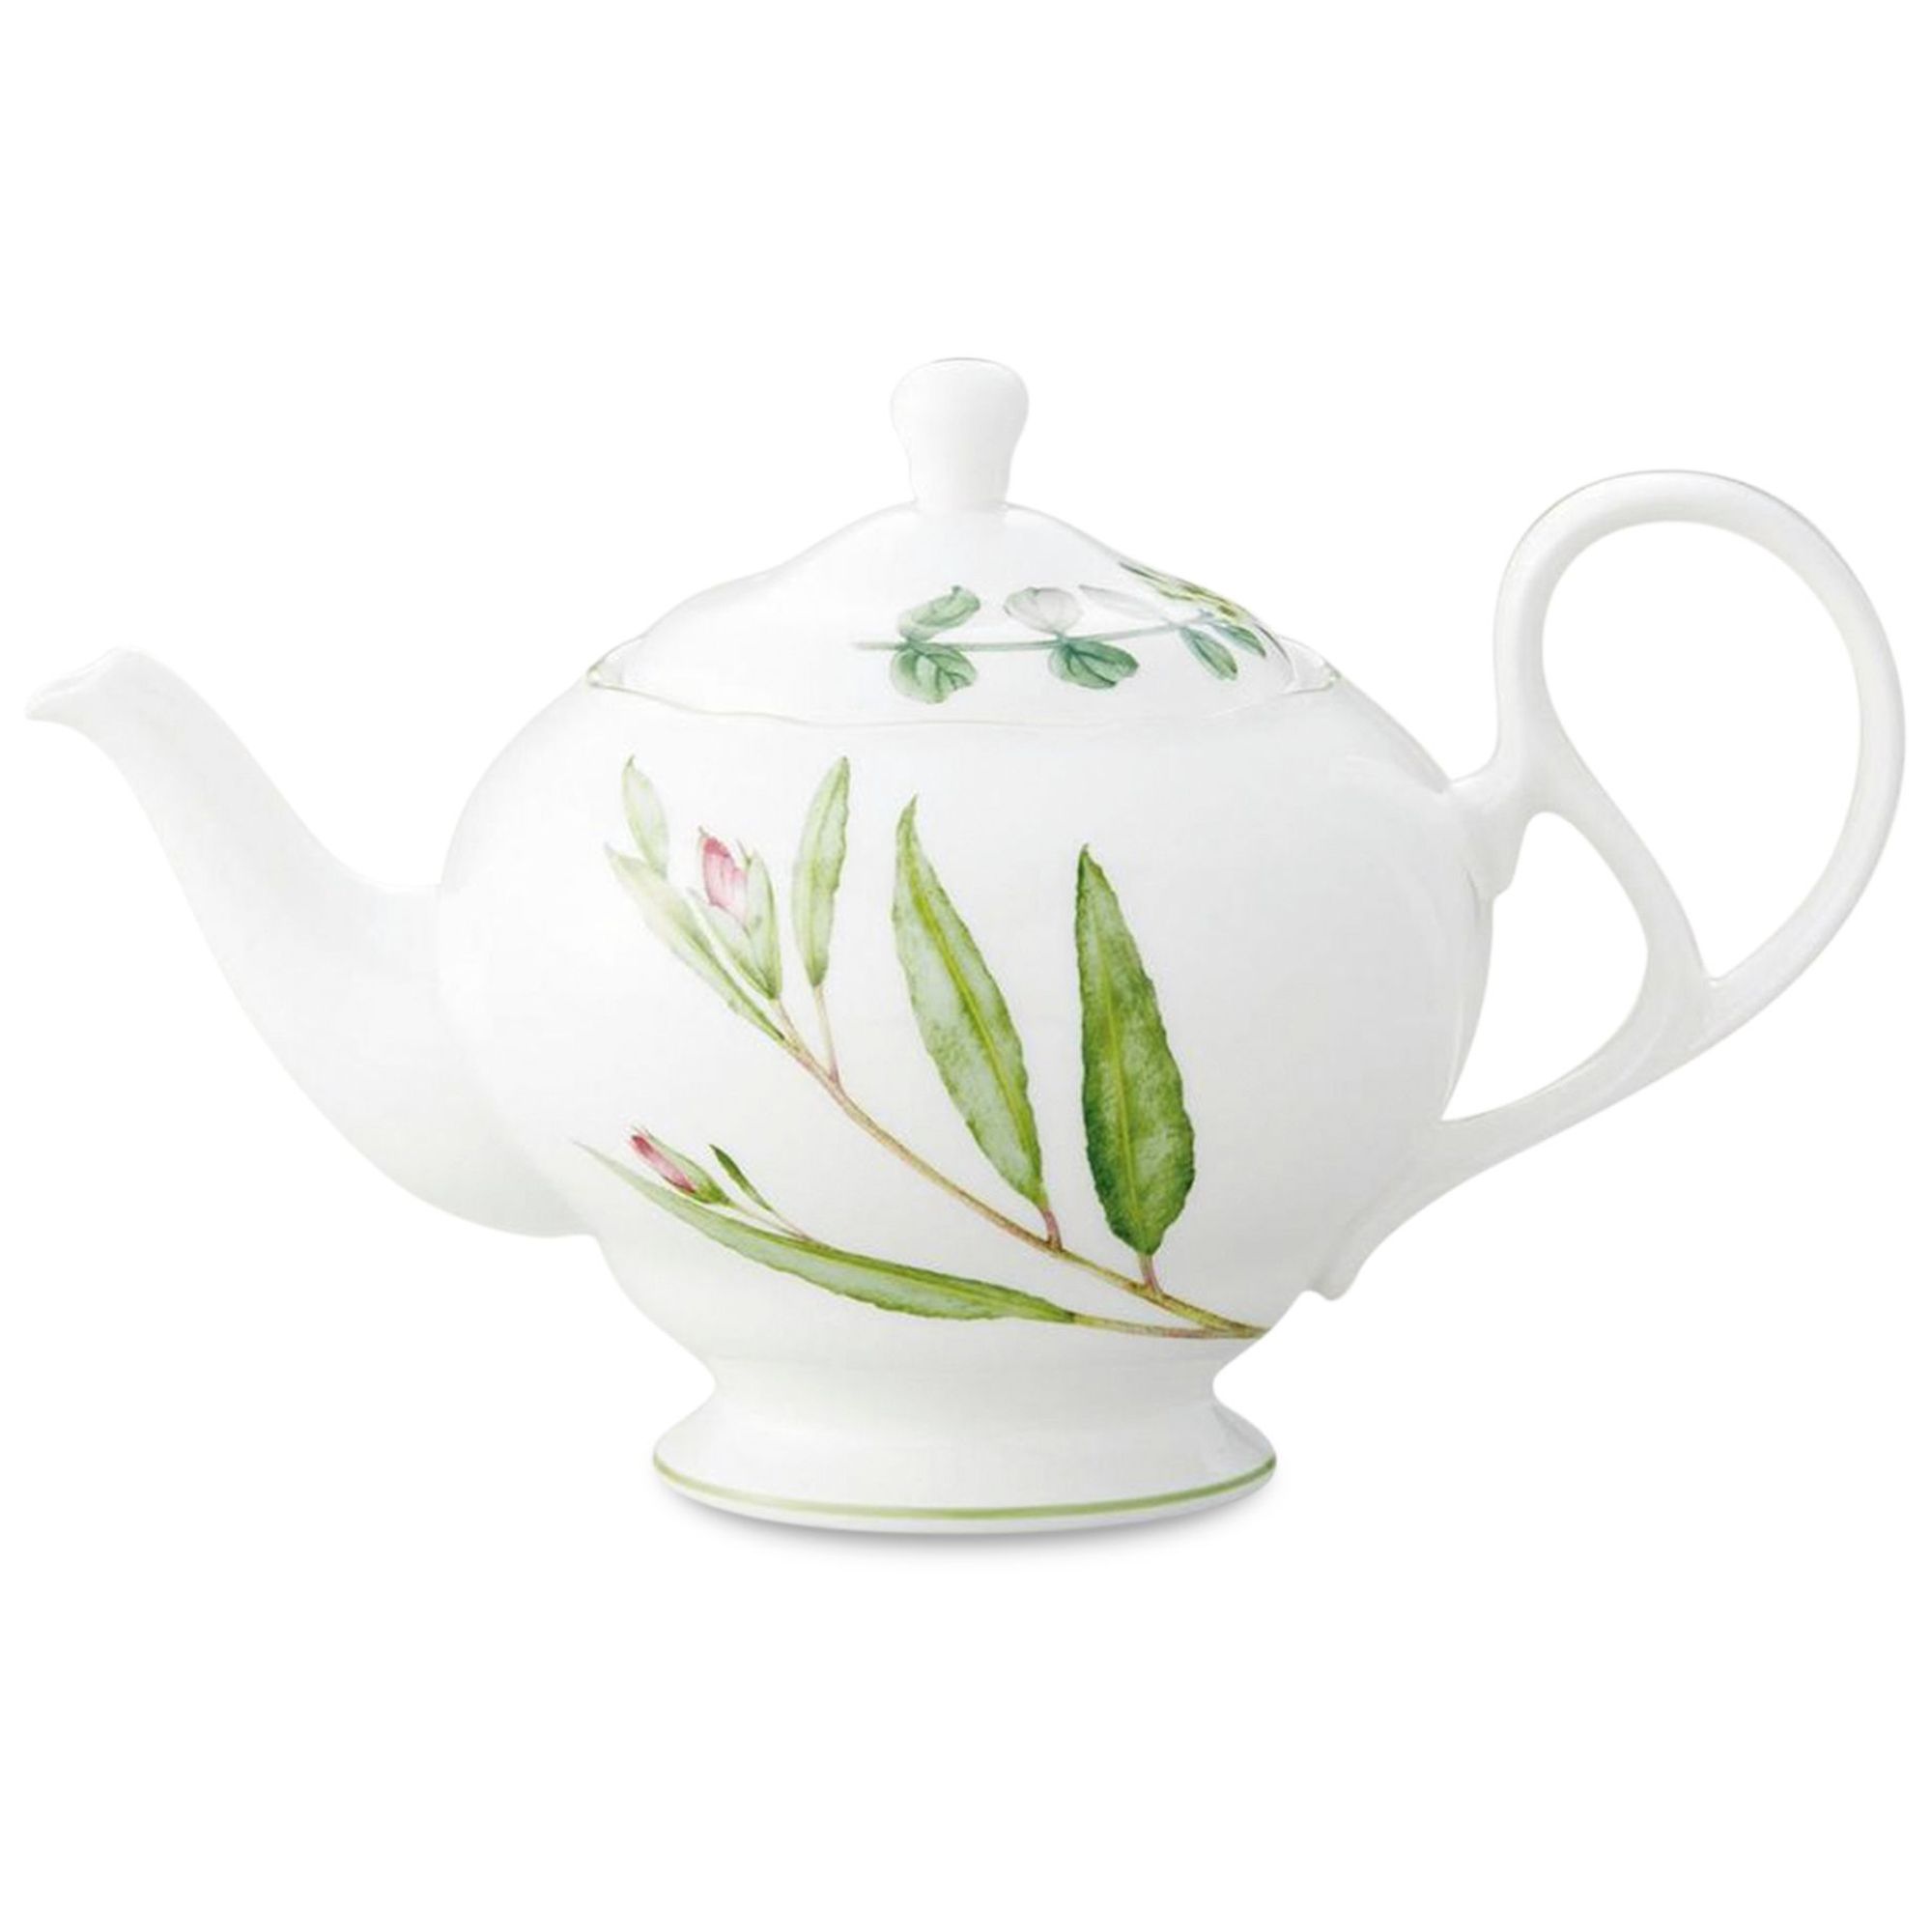  Ấm trà (Bình trà) dung tích 1.030ml | English Herbs 4942L-97823 